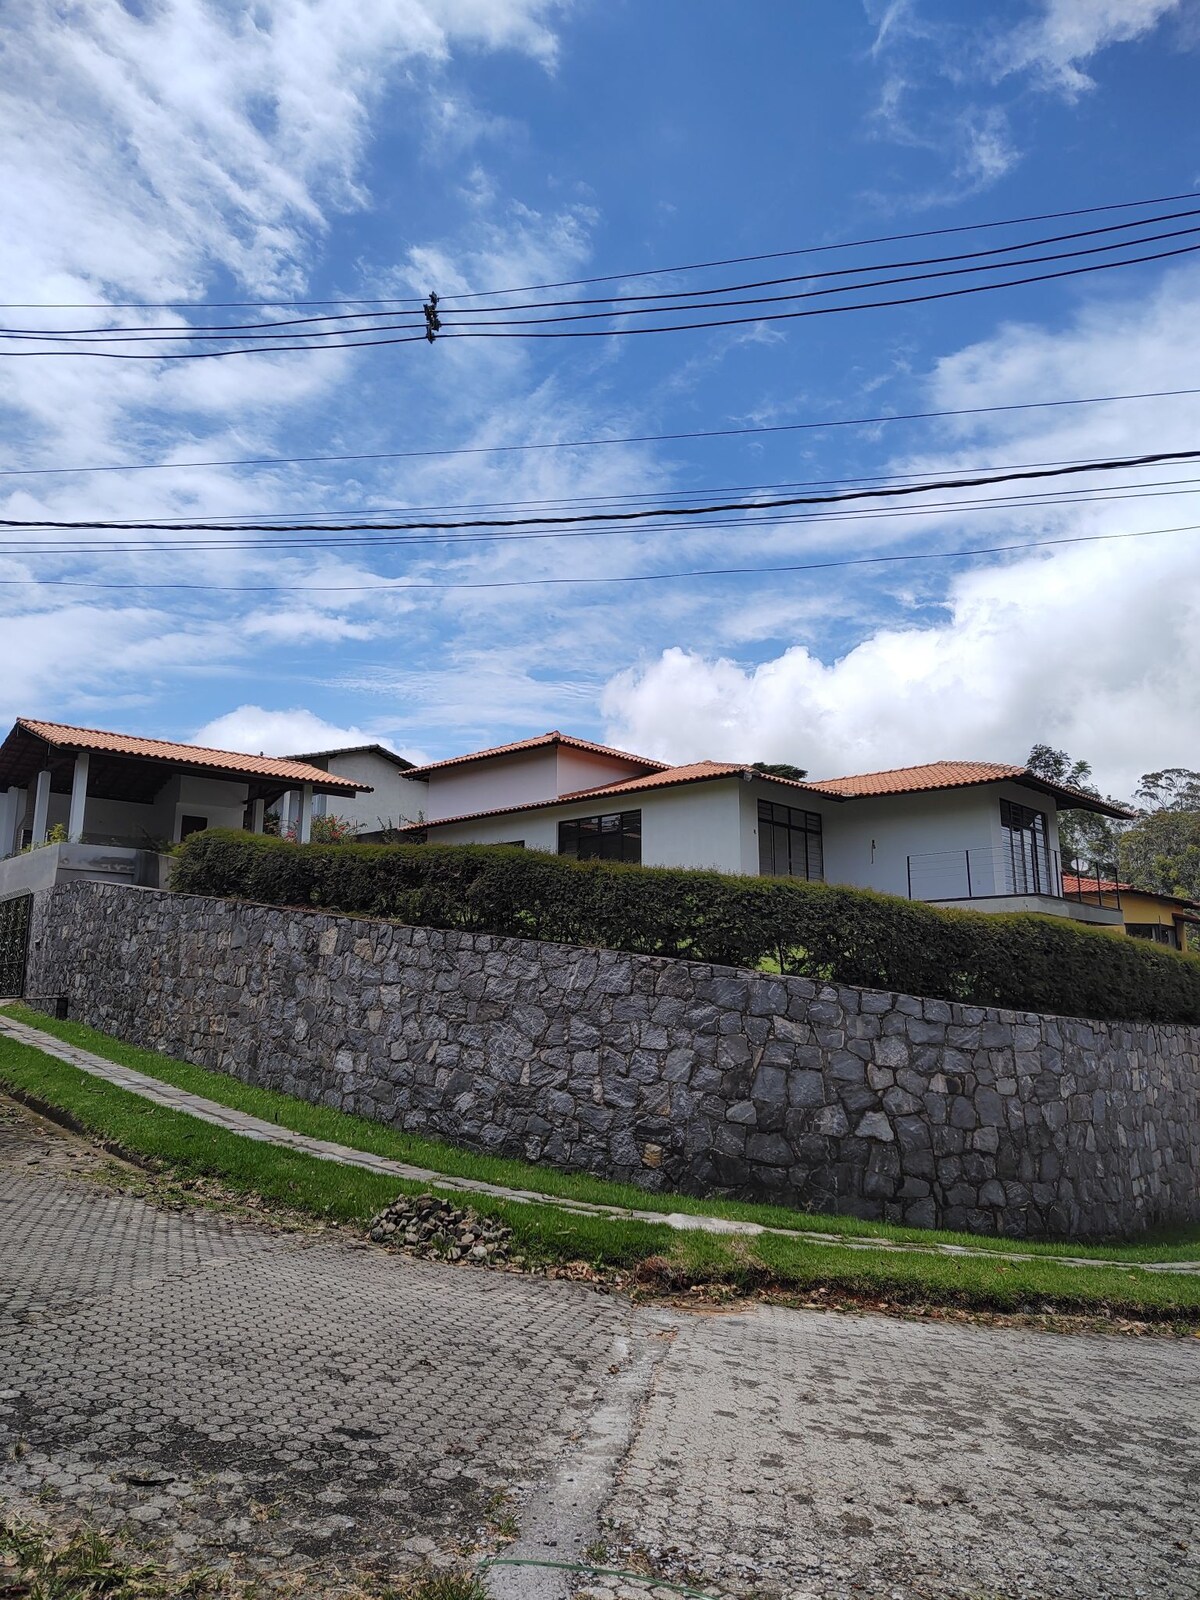 Casa em Miguel Pereira, RJ, com vista magnífica.